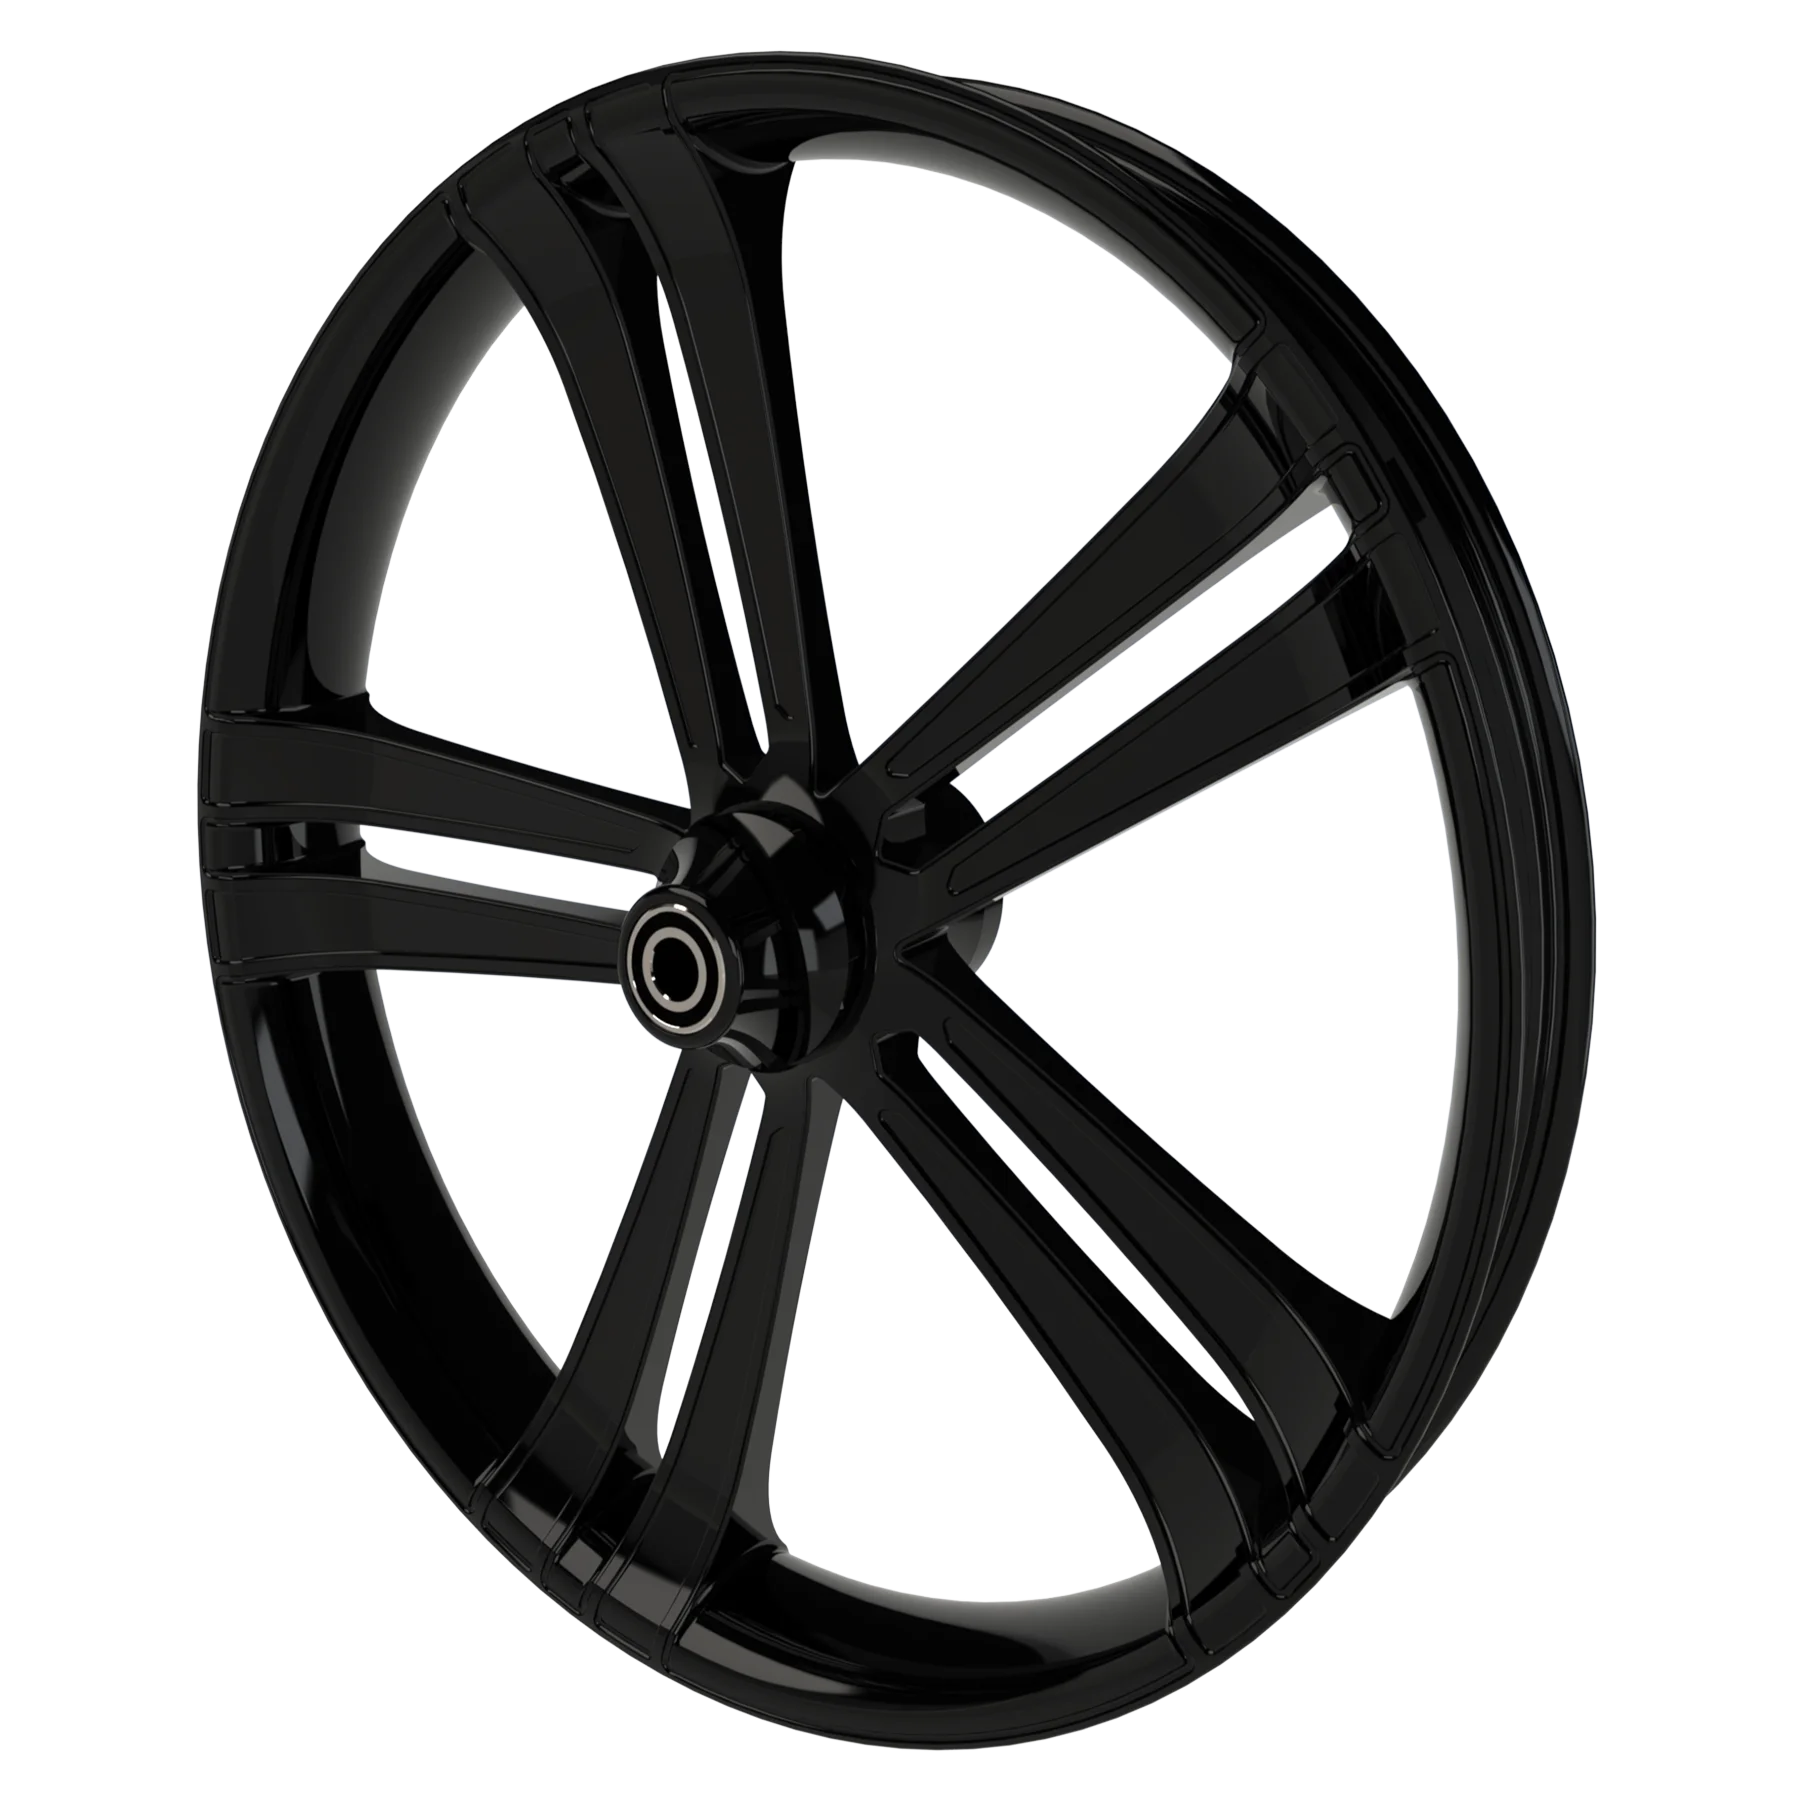 Sinful custom motorycycle wheel in black